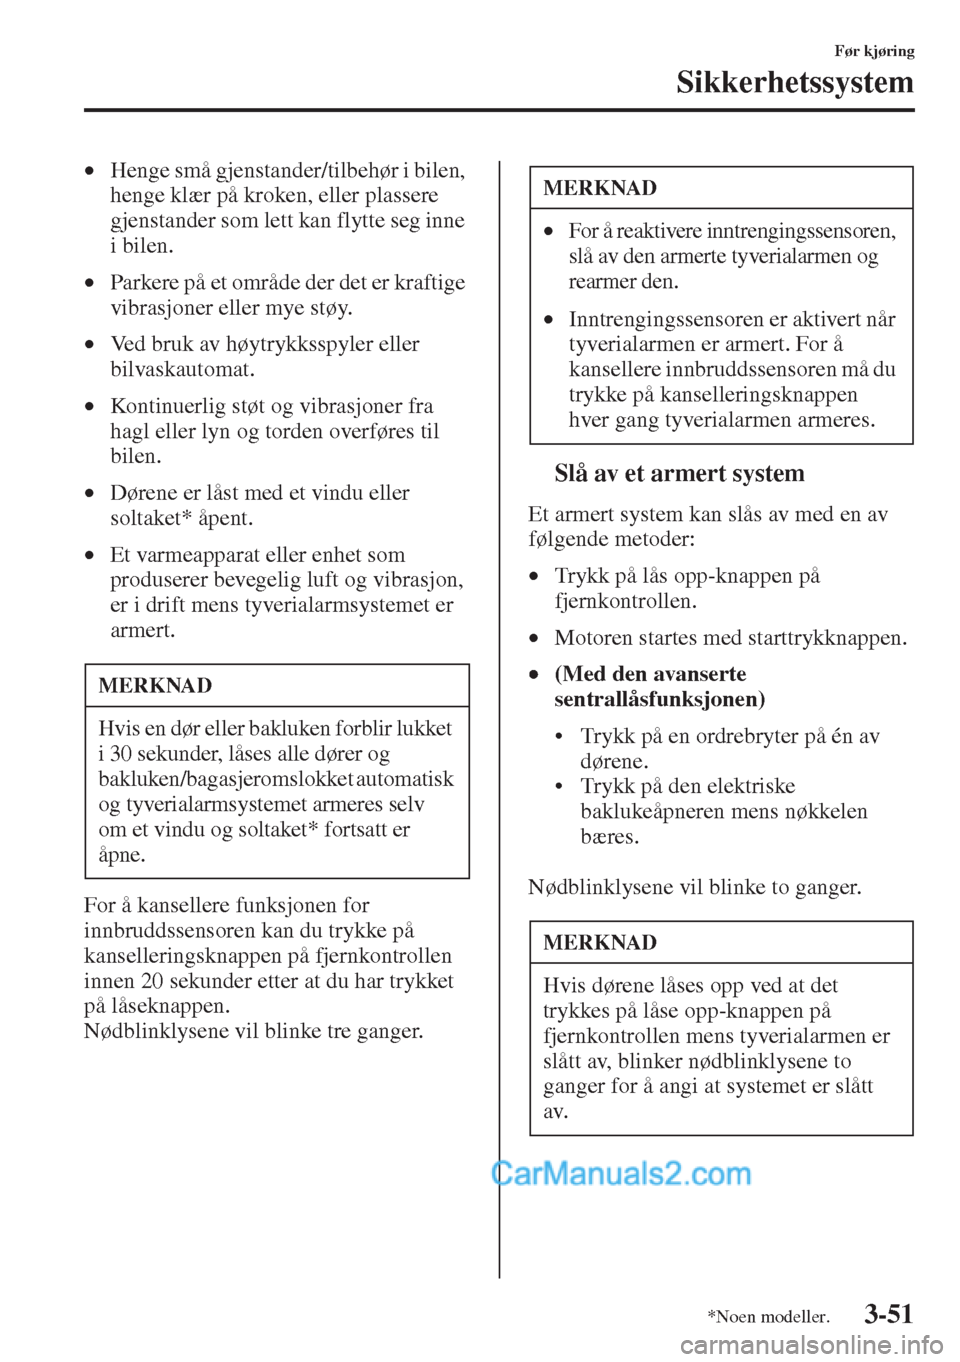 MAZDA MODEL CX-5 2015  Brukerhåndbok (in Norwegian) 3-51
Før kjøring
Sikkerhetssystem
•Henge små gjenstander/tilbehør i bilen, 
henge klær på kroken, eller plassere 
gjenstander som lett kan flytte seg inne 
i bilen.
•Parkere på et område d